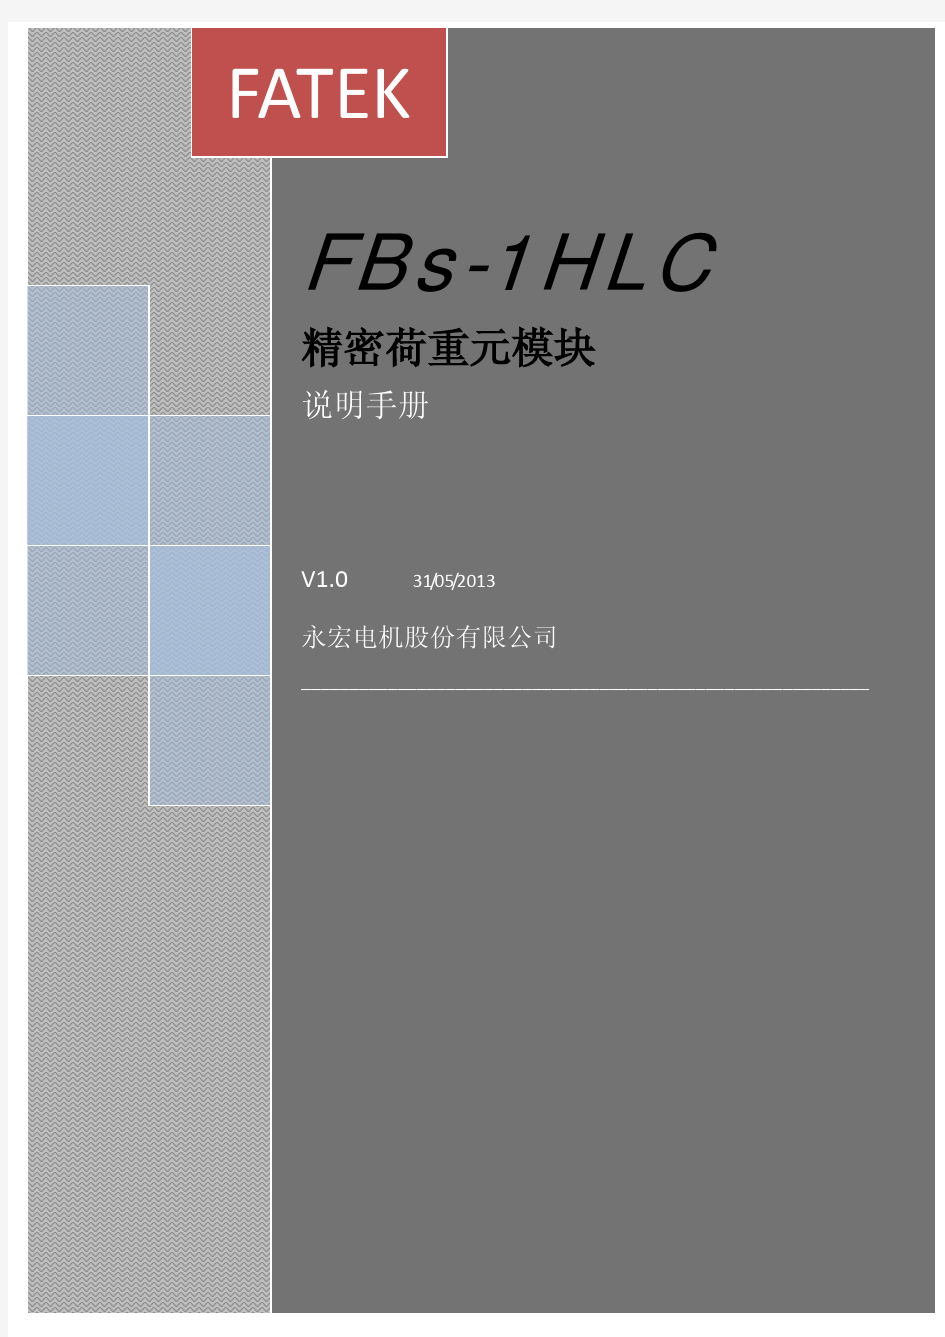 永宏1HLC使用手册与案例